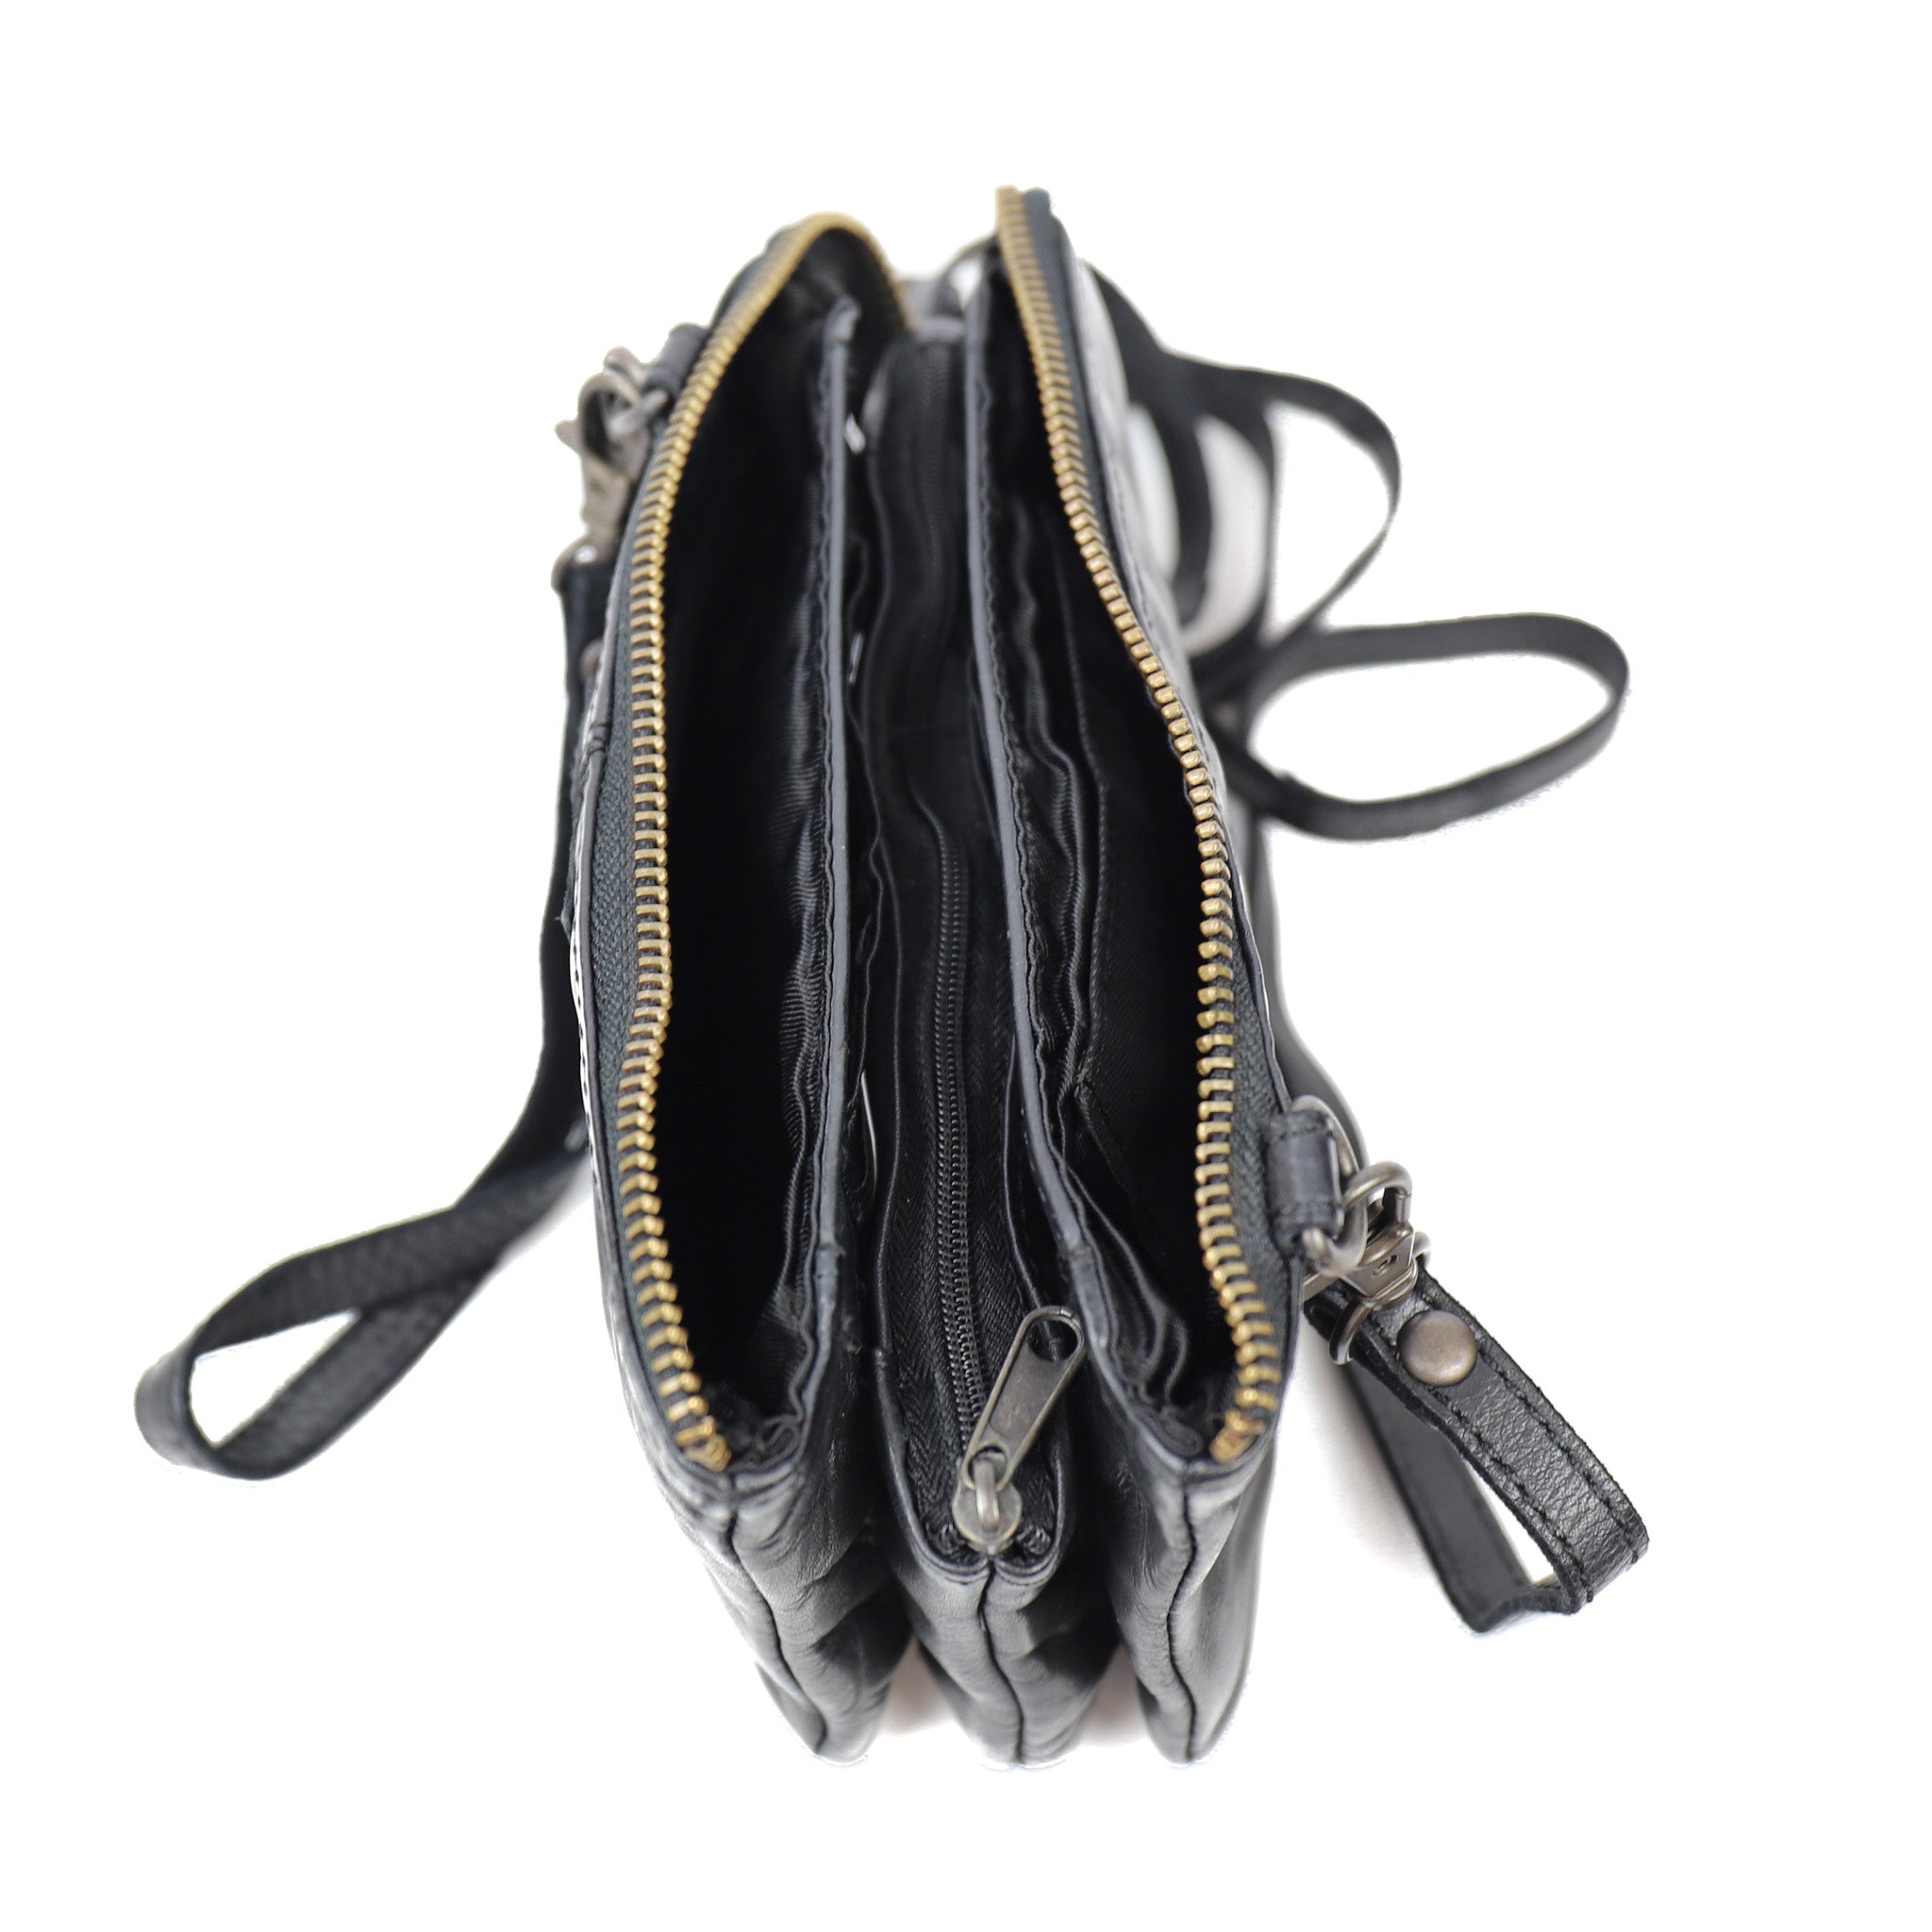 Purse bag 'Umi' black - CL 36799